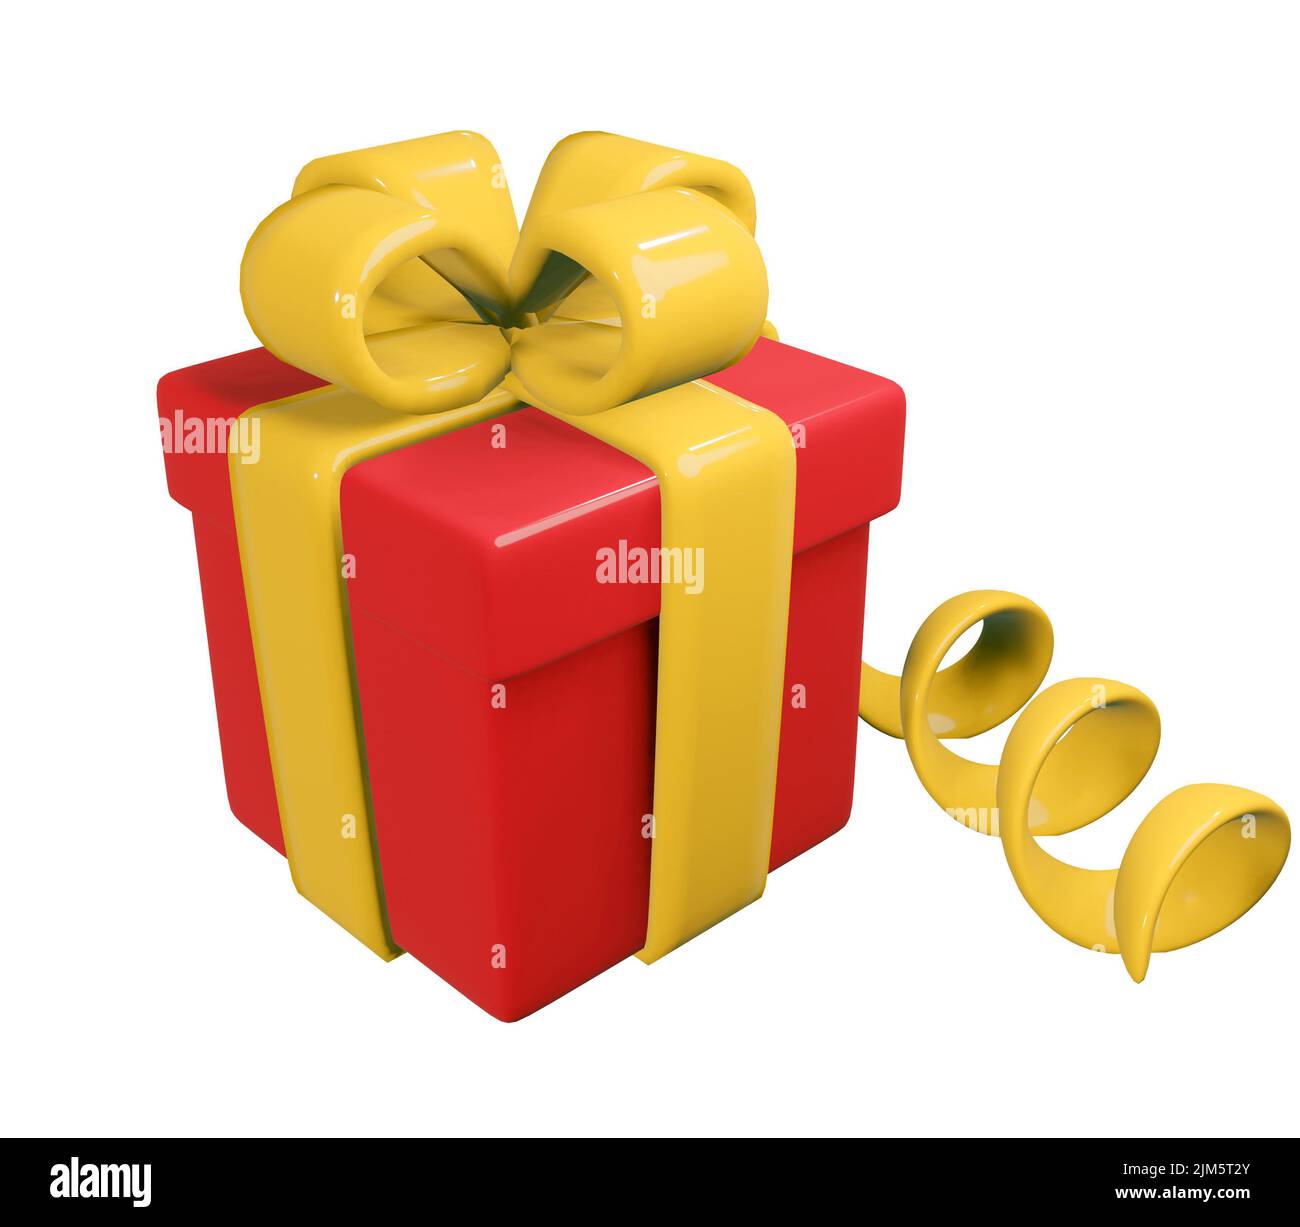 Scatola regalo rossa realistica con nastro giallo. Decorazioni natalizie presenti isolate su sfondo bianco. Sorpresa festiva. illustrazione di rendering 3d. Foto Stock